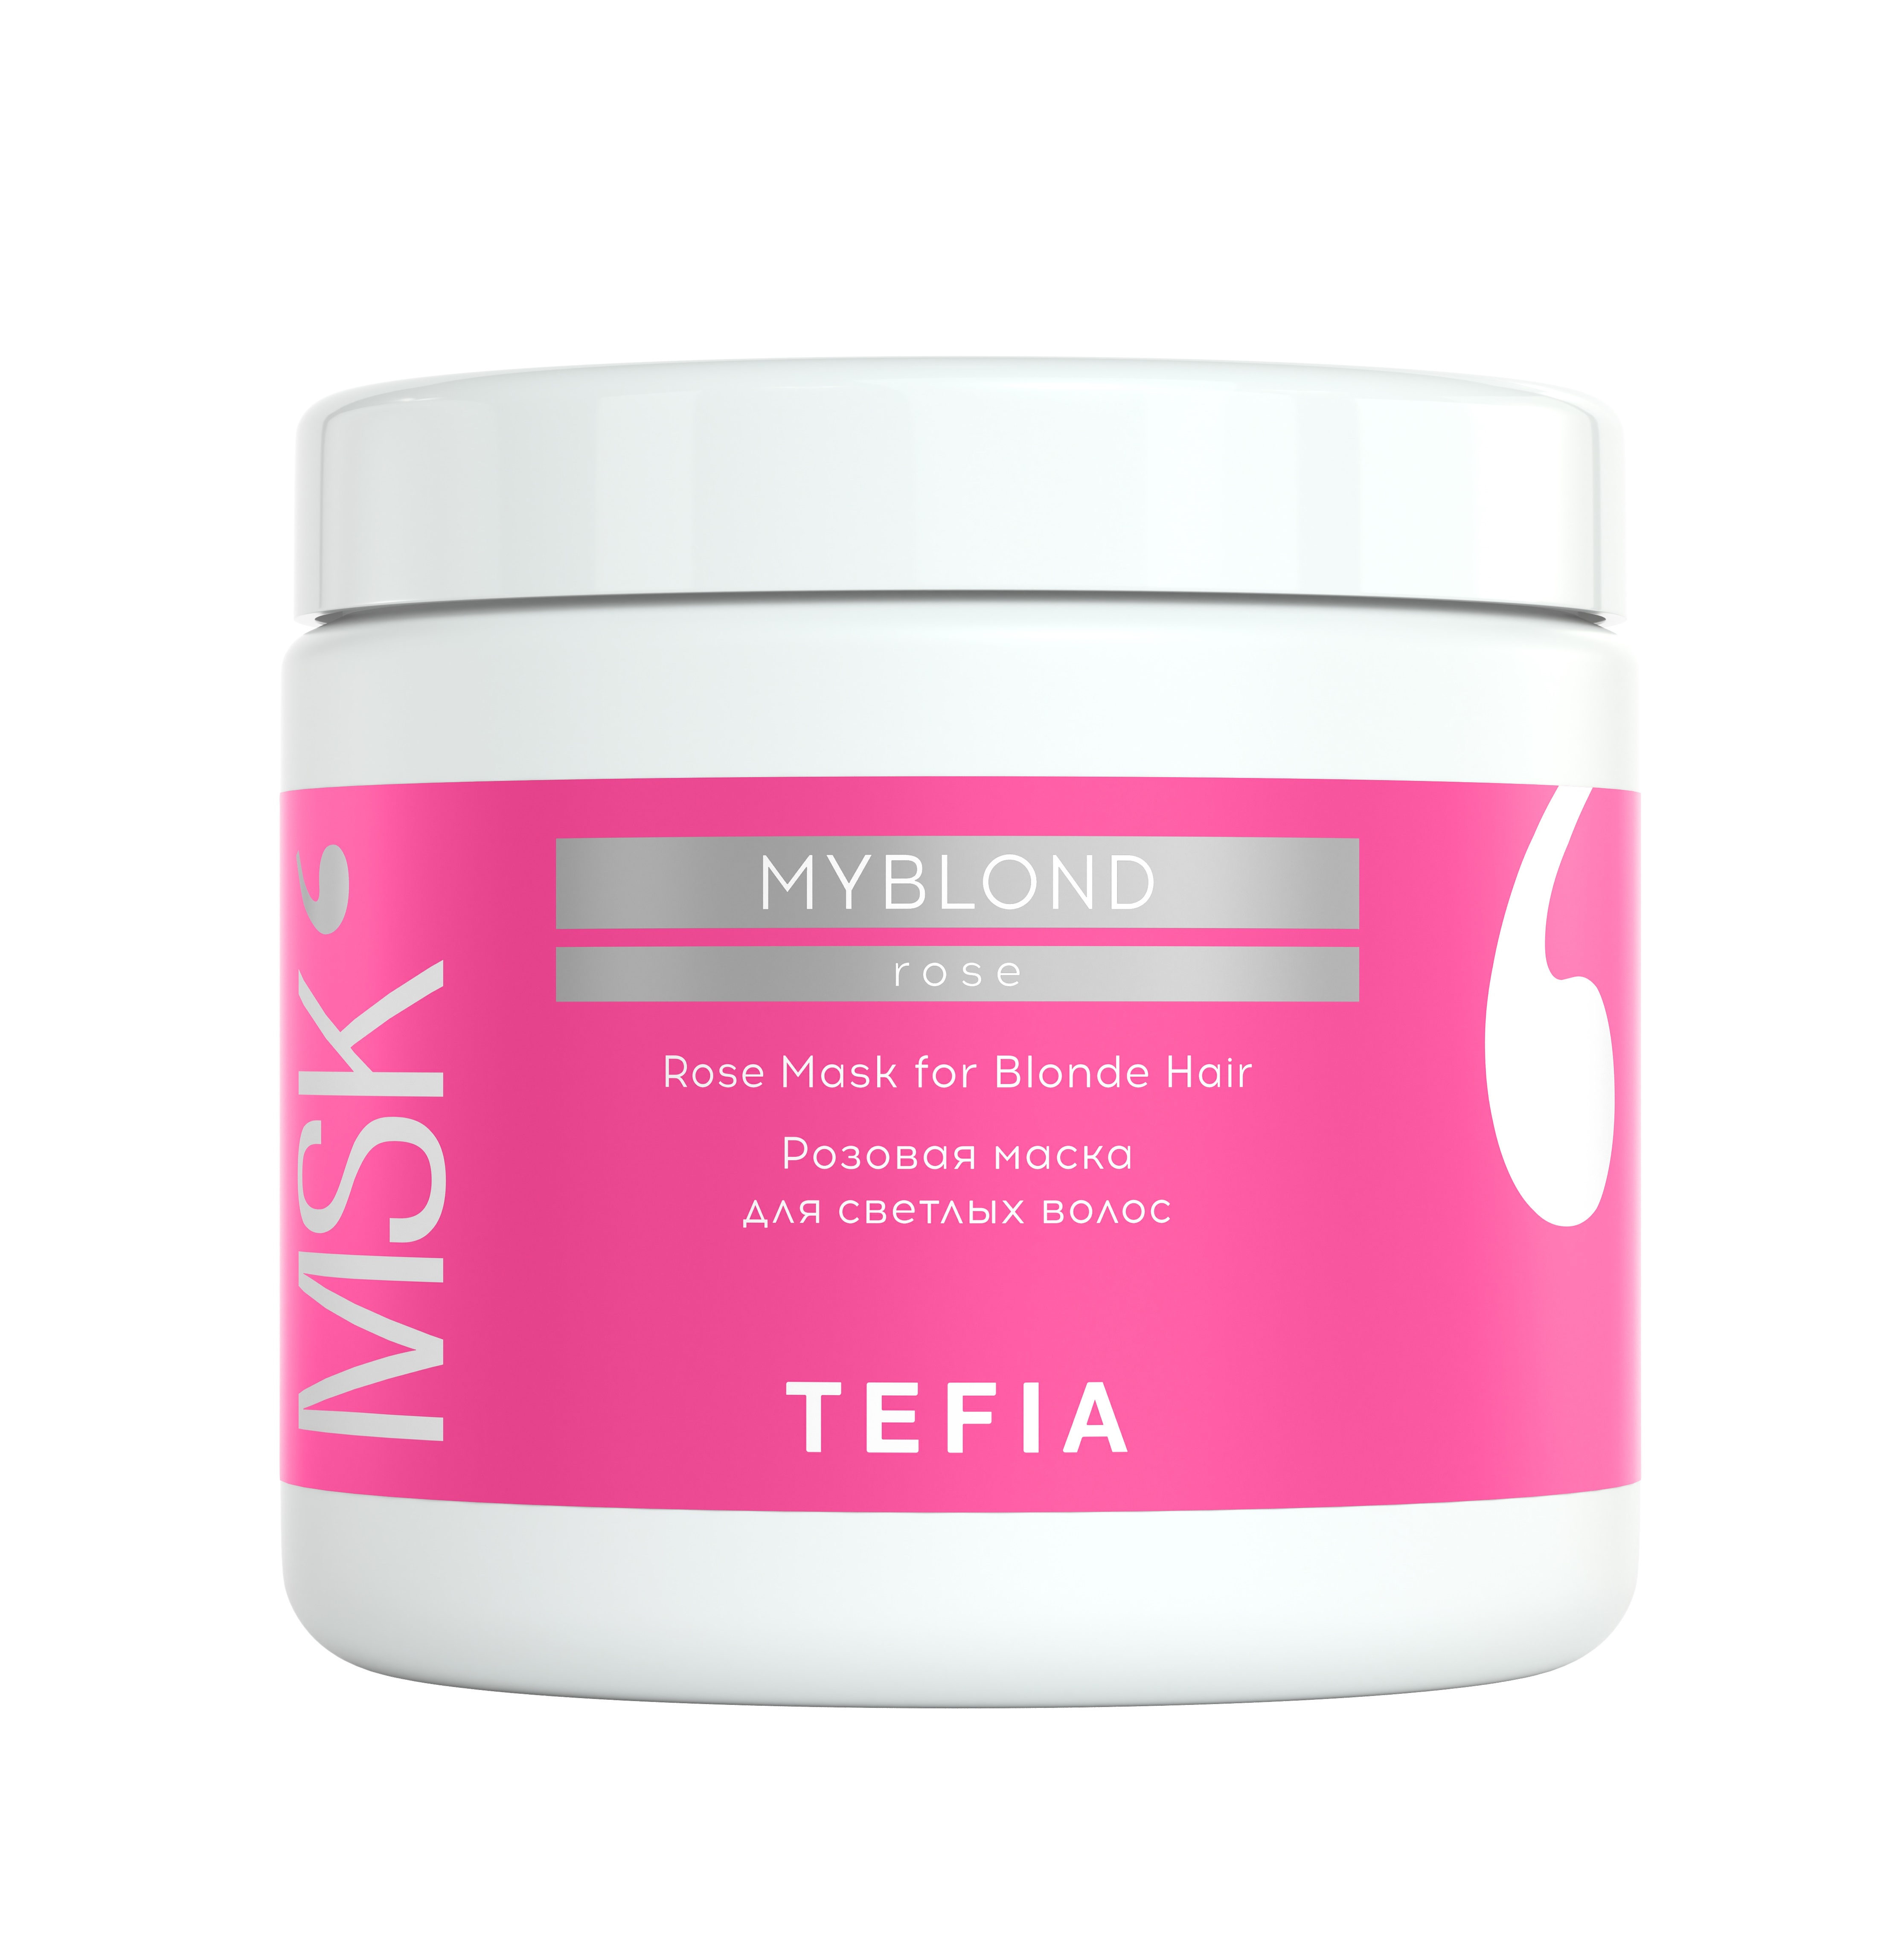 Маска TEFIA розовая для светлых волос Rose Mask for Blonde Hair 500мл, Линия MYBLOND